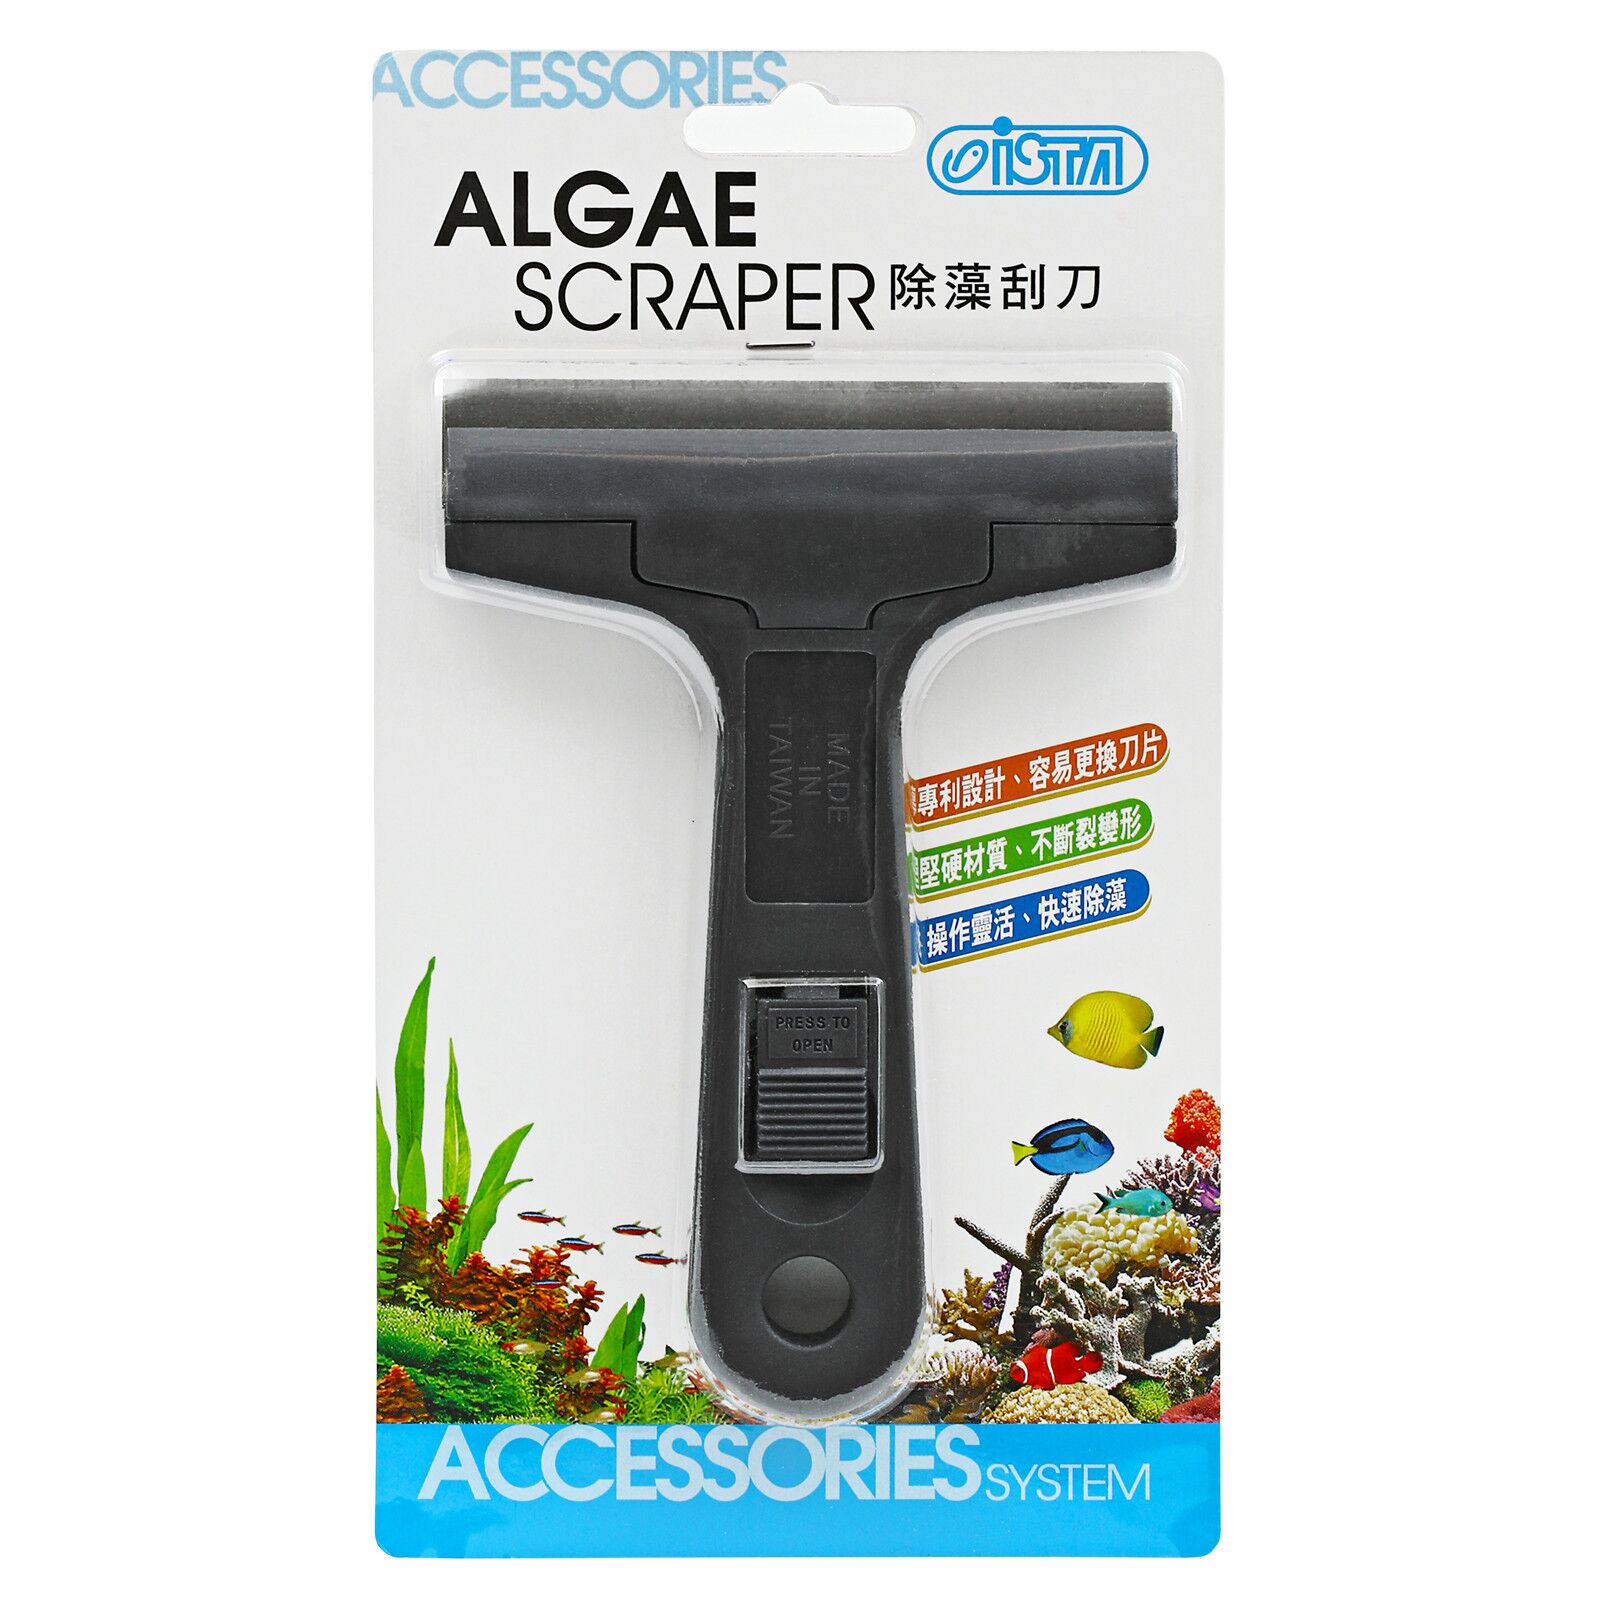 ISTA - Algae Scraper